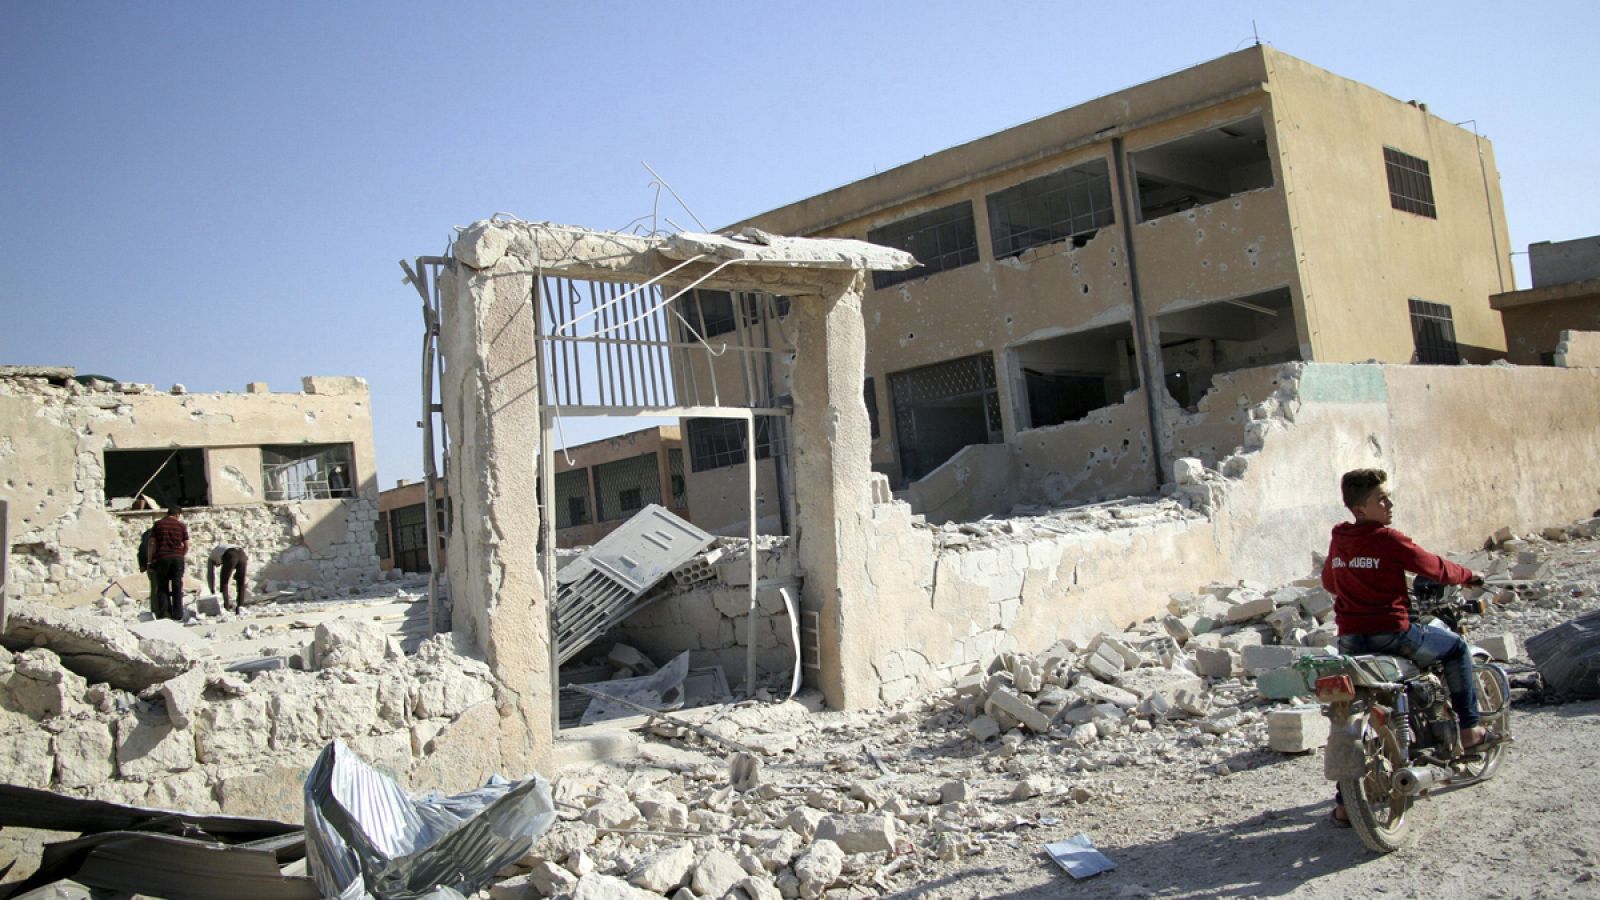 Vista de la escuela siria que sufrió un bombardeo el pasado 27 de octubre, en el que murieron al menos 35 personas